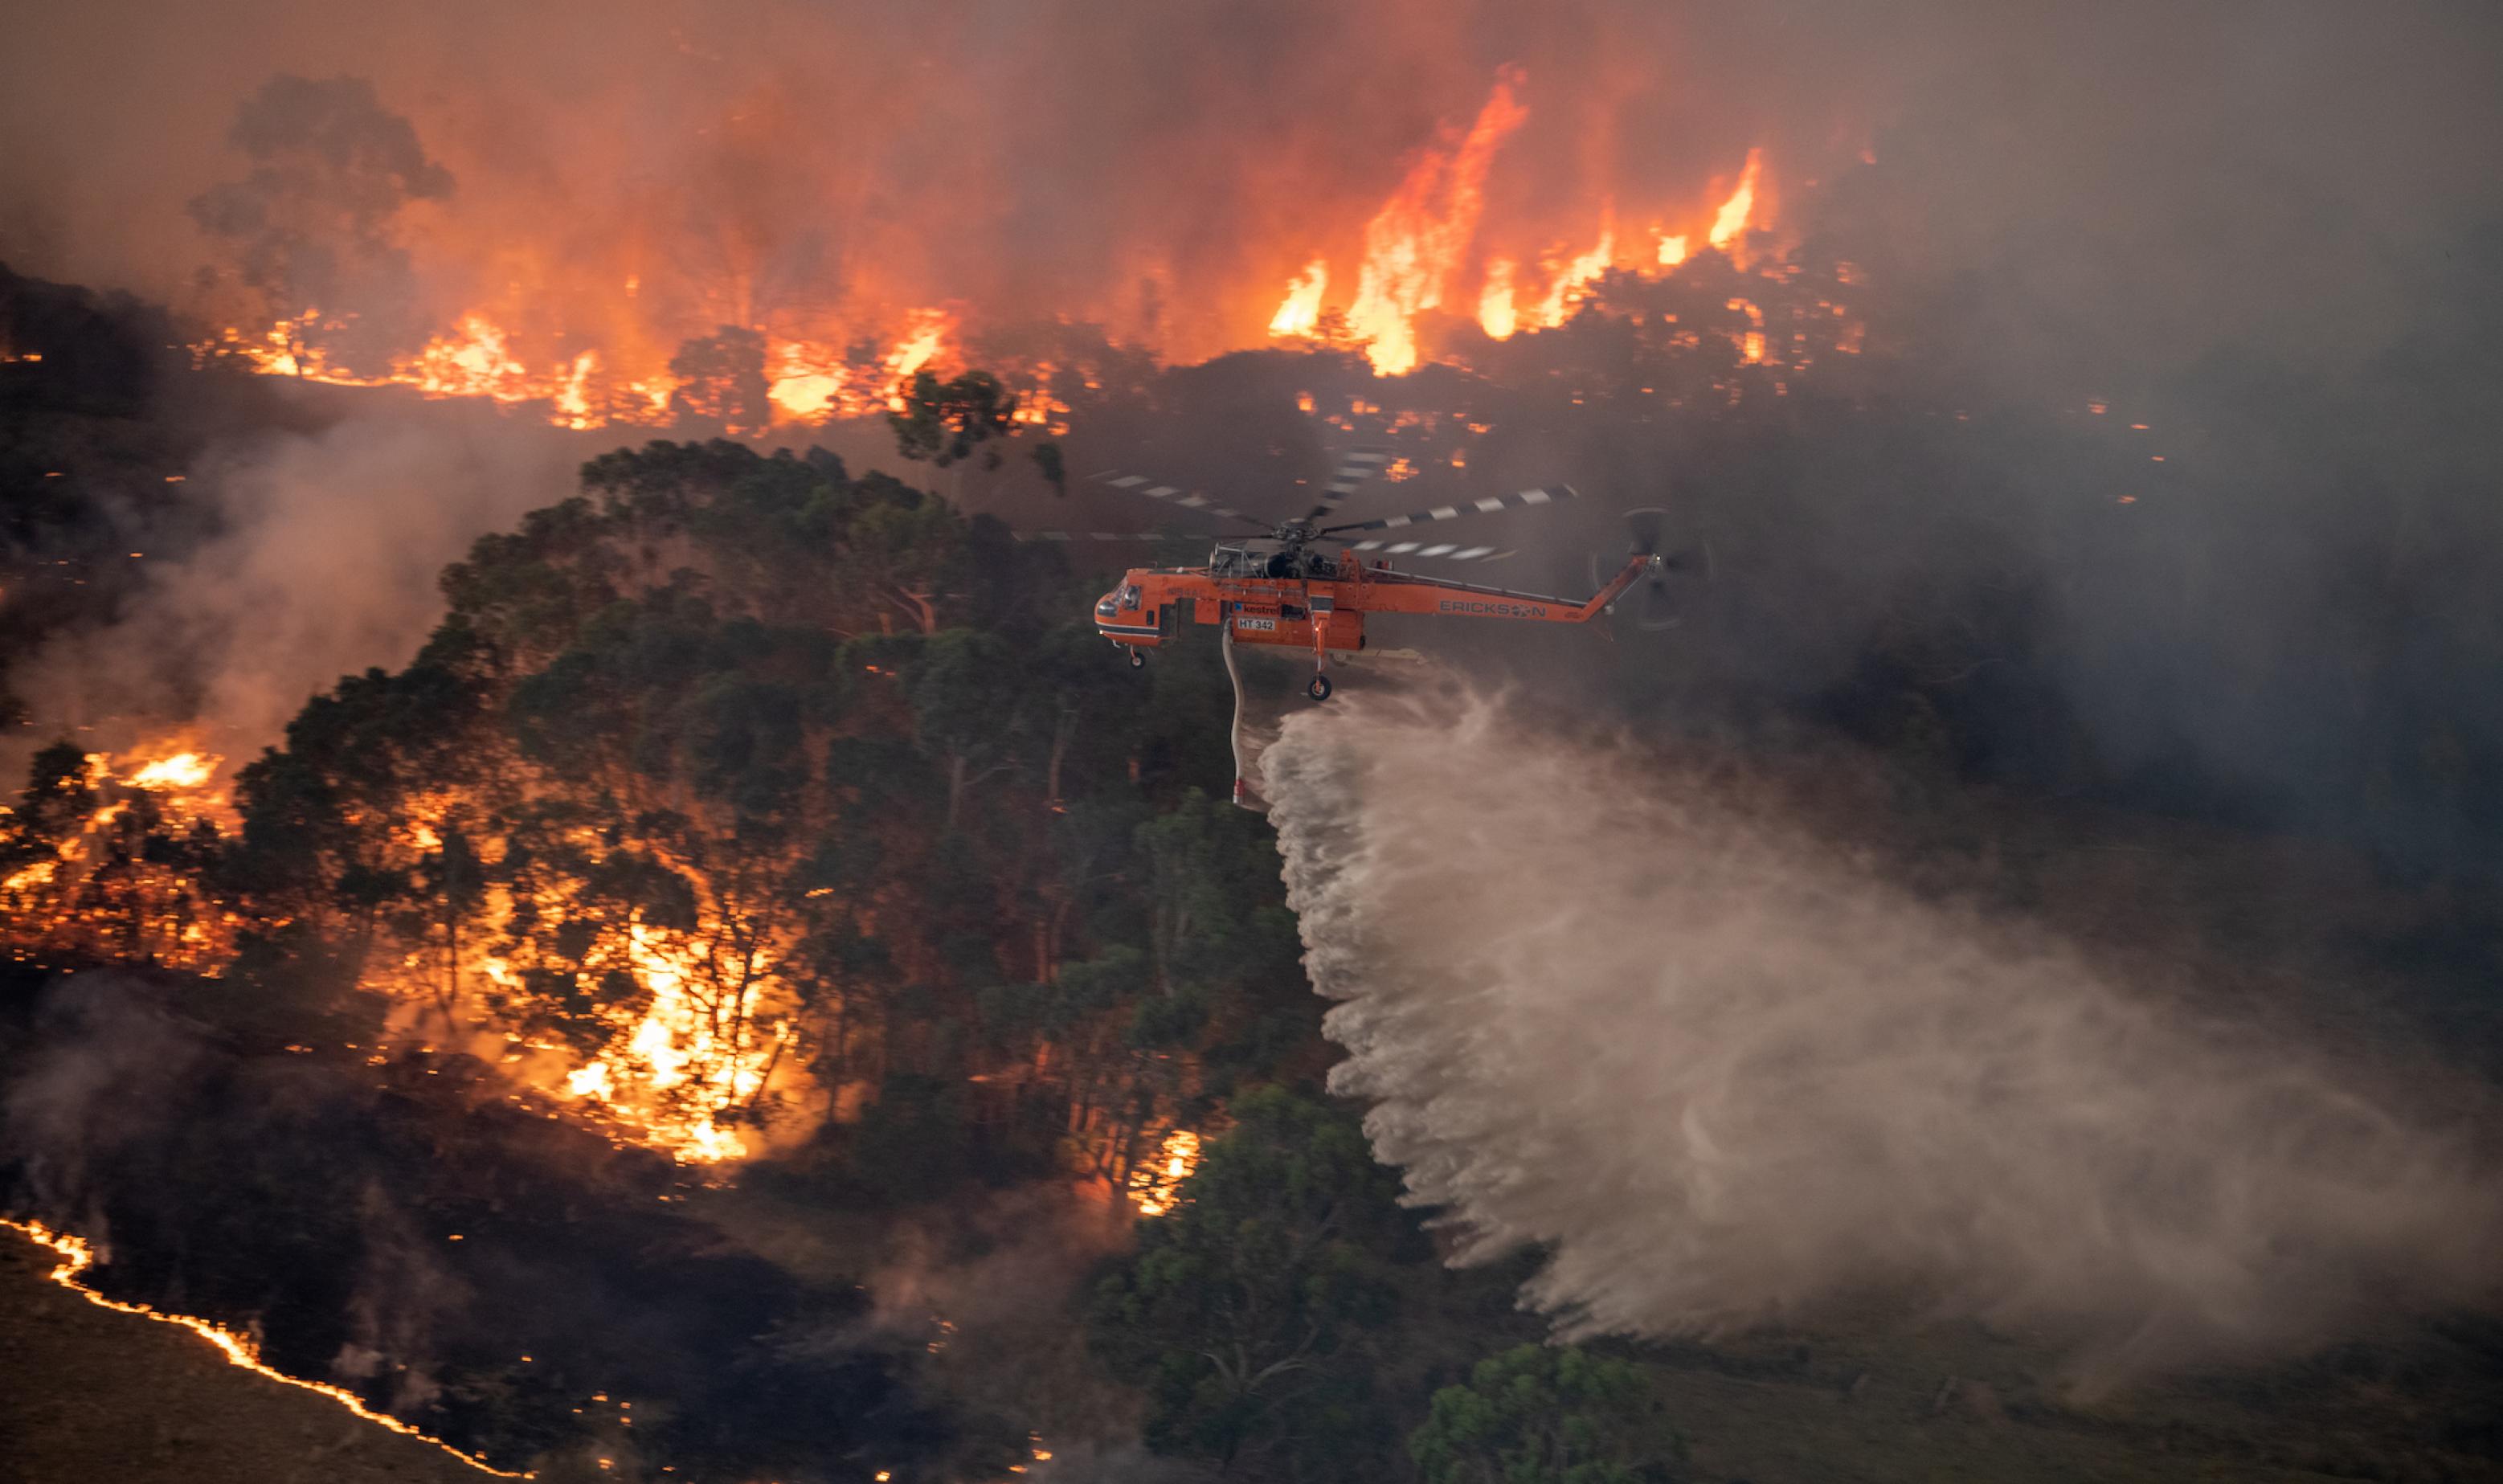 Das Bild zeigt, wie ein Feuerwehrhubschrauber bei Nacht eine große Menge Wasser über einem Waldbrand ausschüttet.